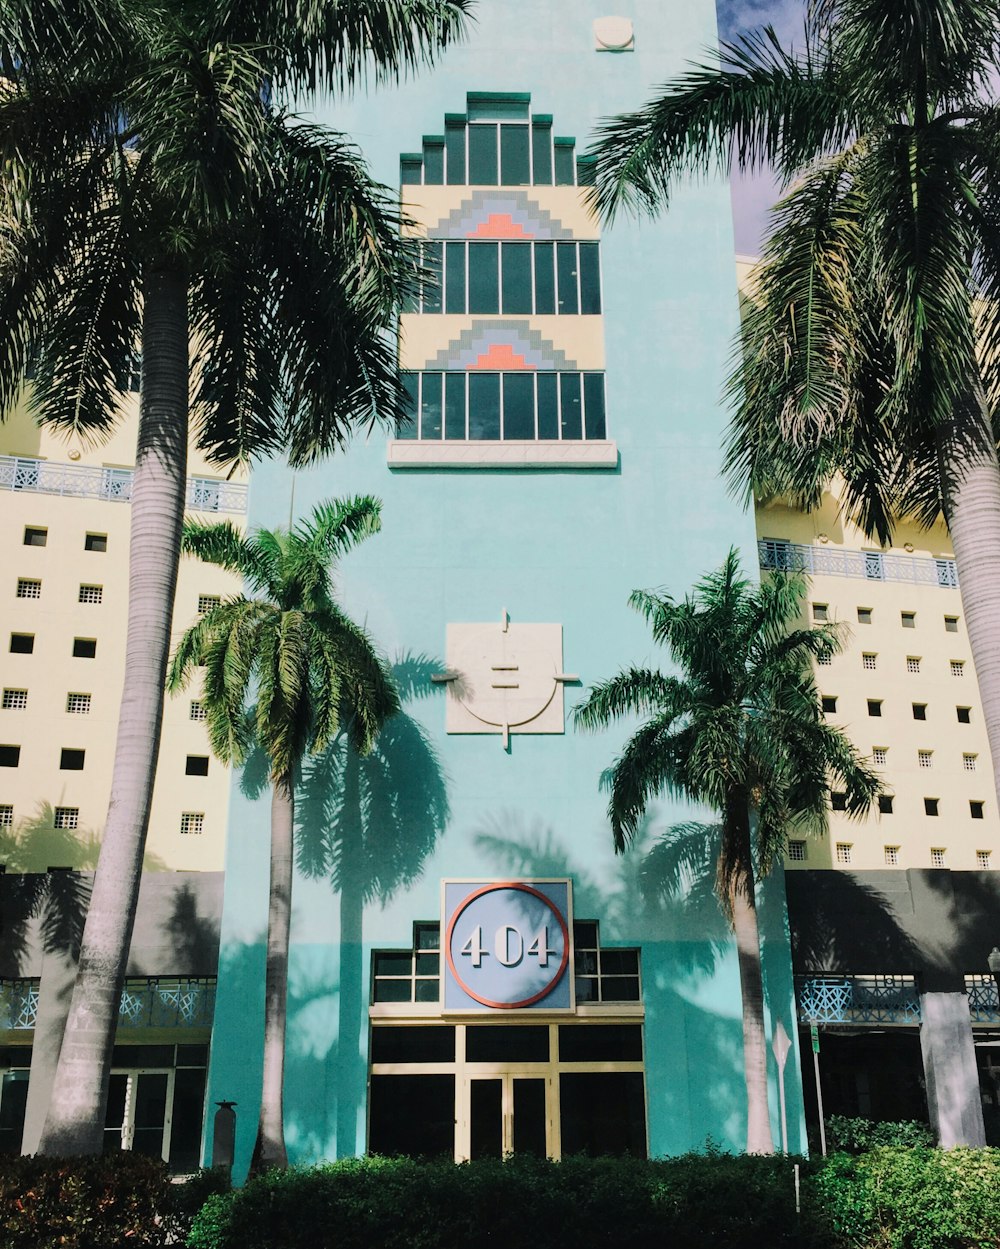 블루 404 코코넛 나무가 있는 콘크리트 건물